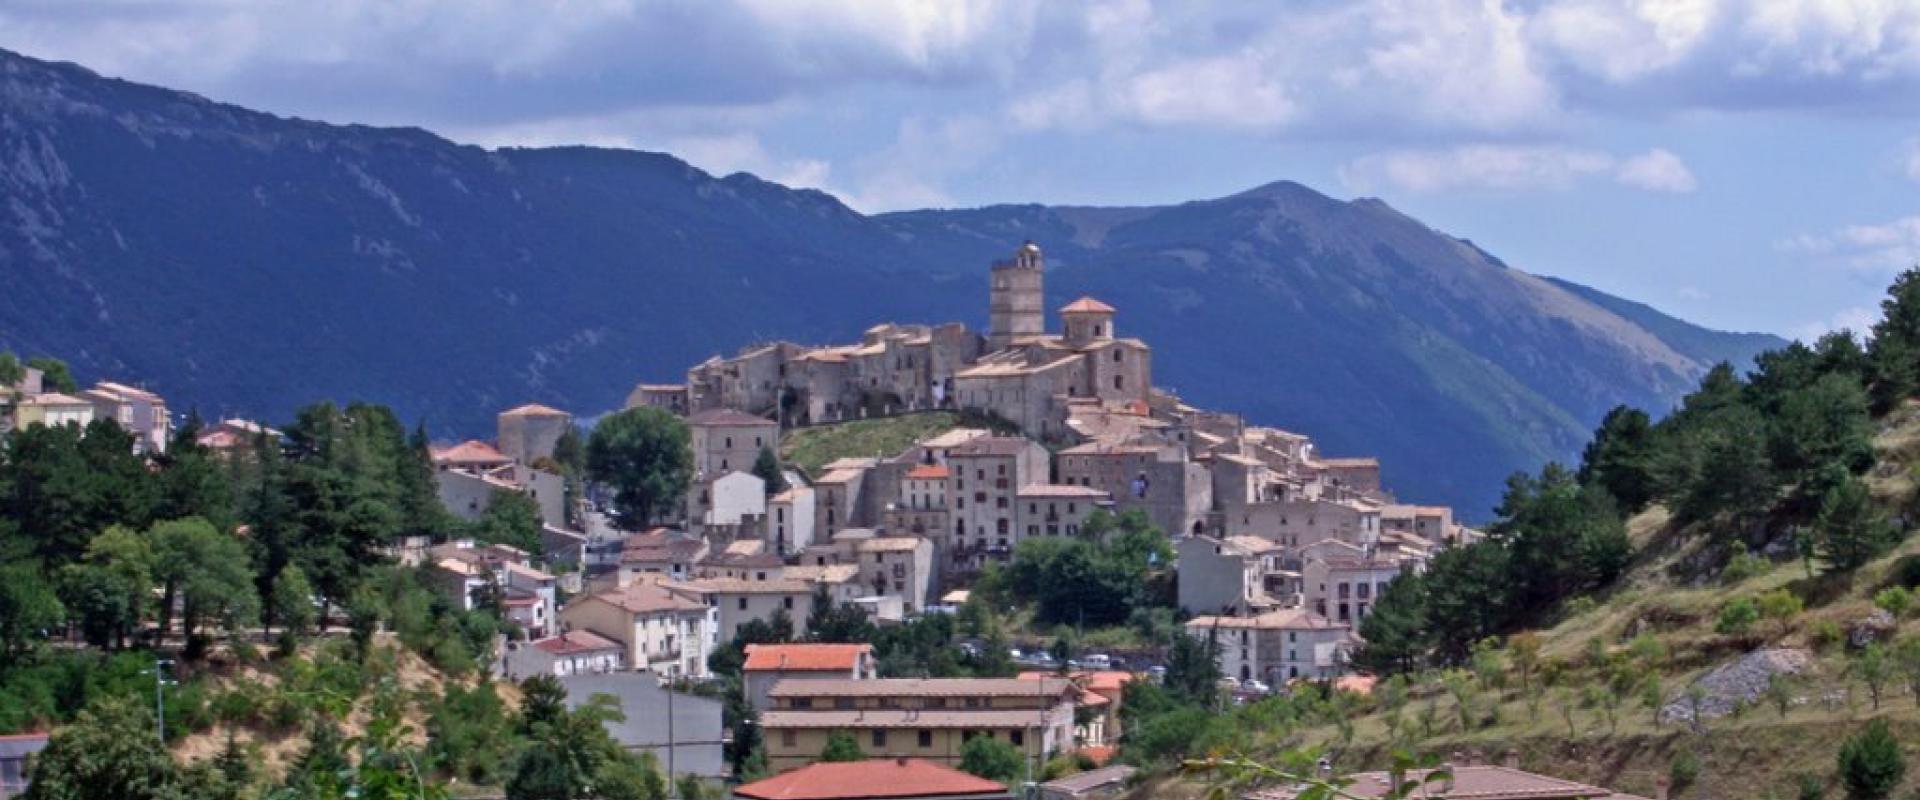 Visit of Castel del Monte Abruzzo